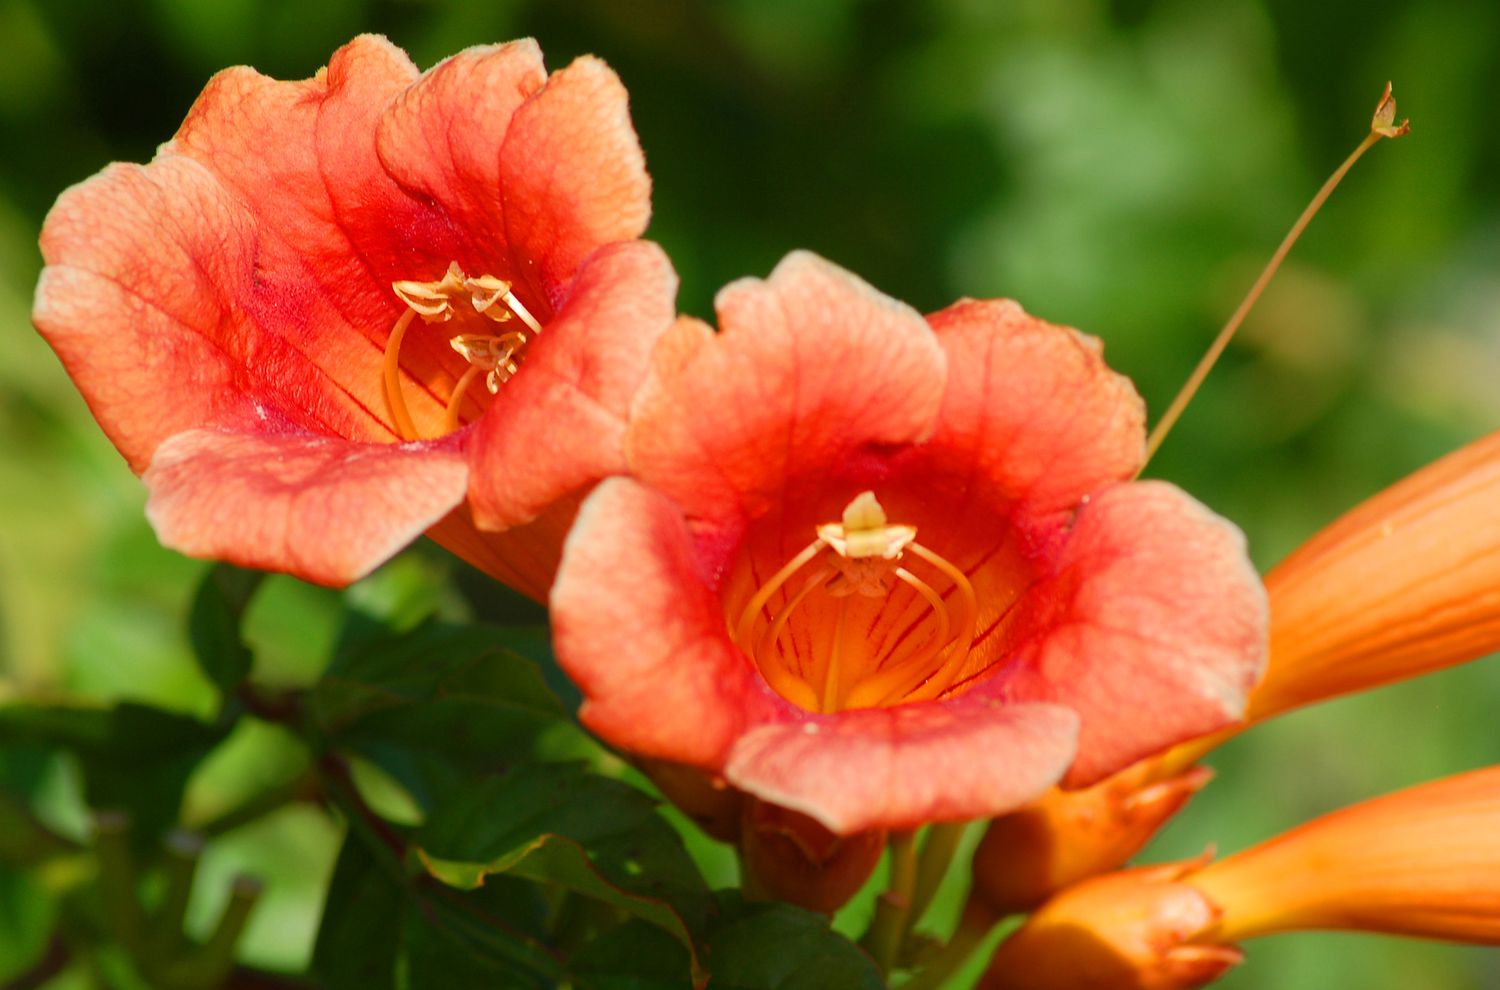 Trompetenrebenblüten mit orangefarbenen trompetenförmigen Blütenblättern in Großaufnahme